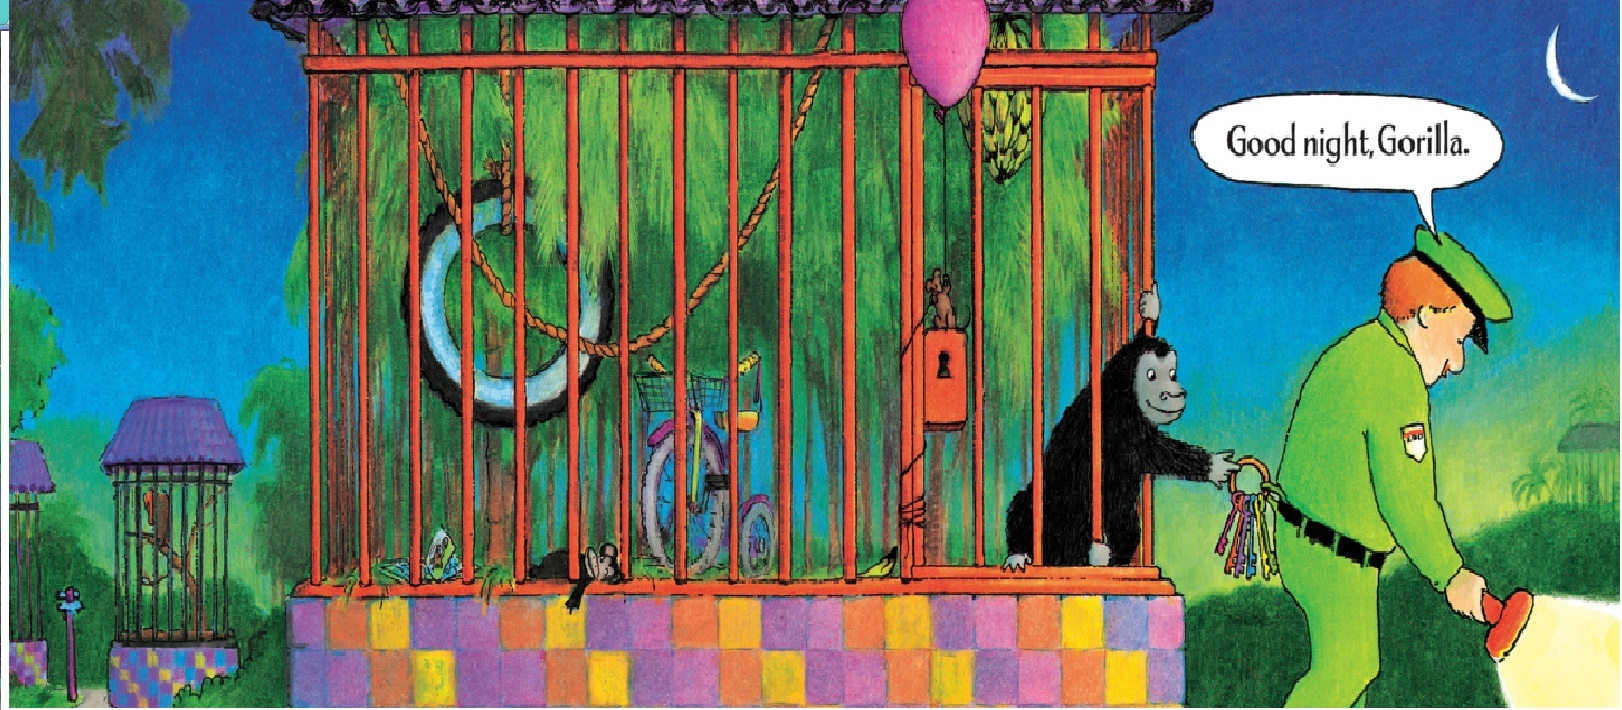 後記：描繪動物園動物和管理員相處的故事，還有經典的睡前共讀繪本《晚安，猩猩》（Good night, Gorilla），那是繪本作家佩琪．芮士曼（Peggy Rathmann，1953～）在一九九四年出版的作品。書中，調皮的猩猩偷走管理員的鑰匙，一一幫動物們打開籠子，跟著管理員回家睡覺。管理員躺到床上之後把燈關上，黑暗中動物們互道「晚安」、「晚安」、「晚安」的聲音，驚醒了管理員的太太，動物們只好乖乖的回到動物園，但還是有兩個小傢伙又偷偷跑出來⋯⋯除了故事幽默有趣之外，畫面上猩猩淘氣的表情和靈活的動作，都非常讓人喜愛，也使得這本書在將近三十個年頭中，持續陪伴許多小朋友度過了快樂的睡前時光，和他們互道了無數次心滿意足的晚安晚安晚安。圖為Good night, Gorilla內頁。